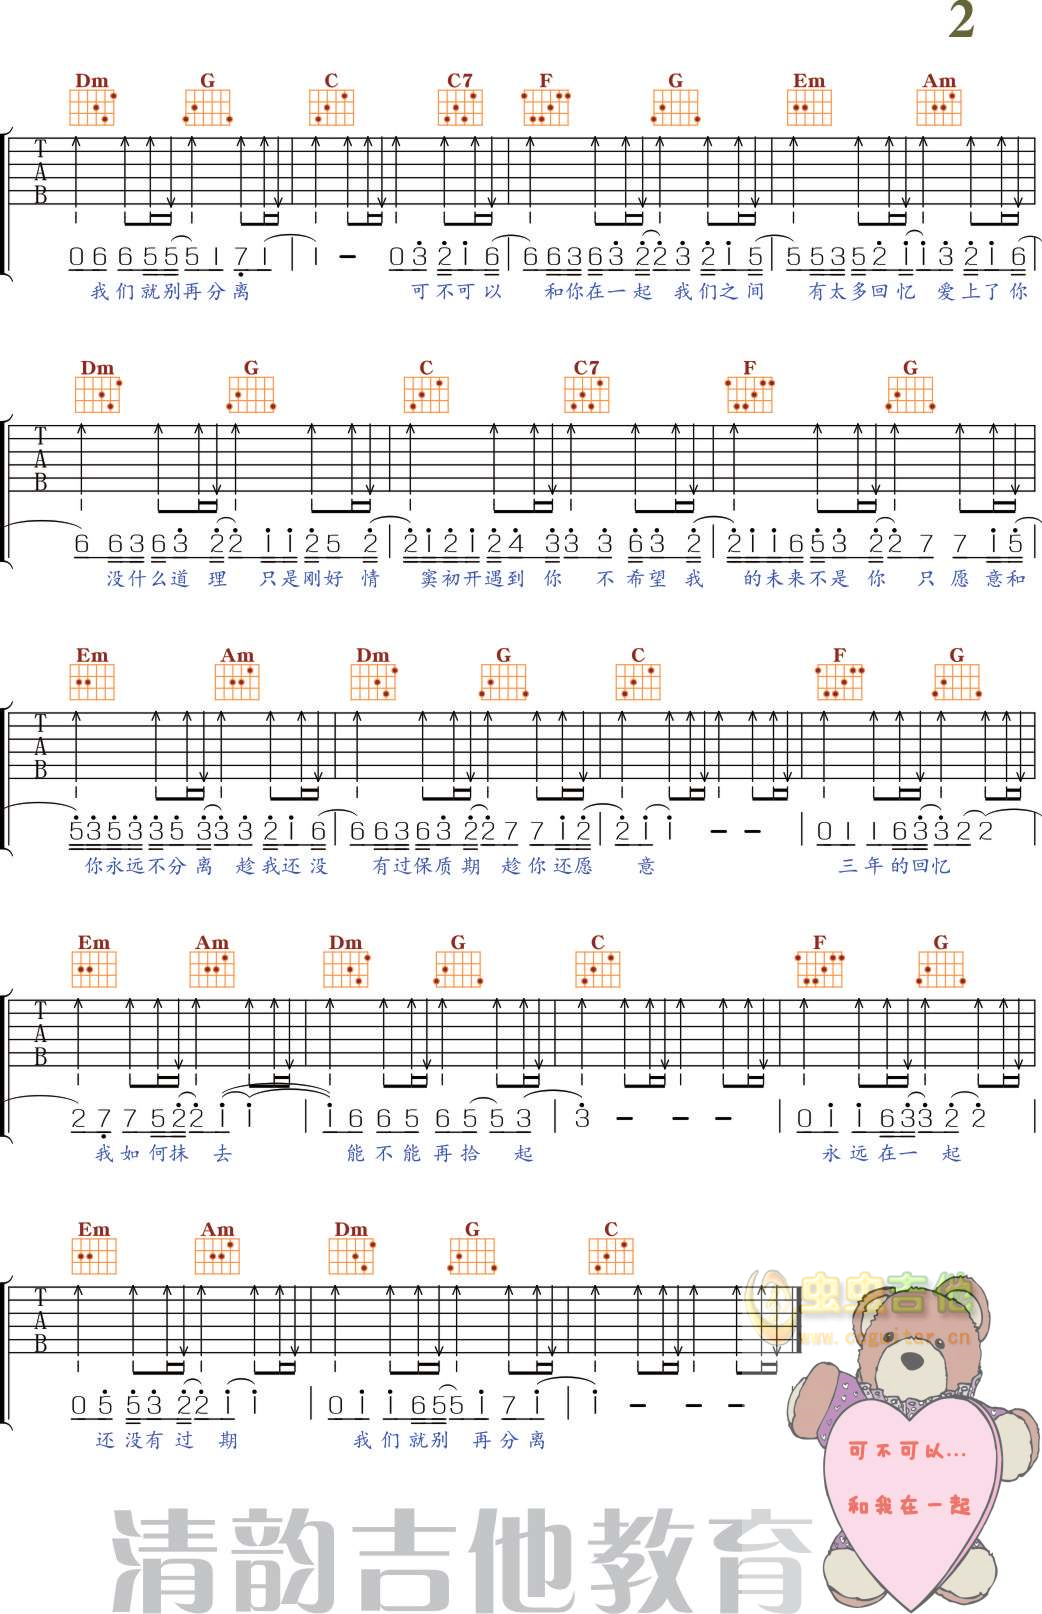 《可不可以》 张紫豪 精华版吉他谱-虫虫吉他:www.ccguitar.cn